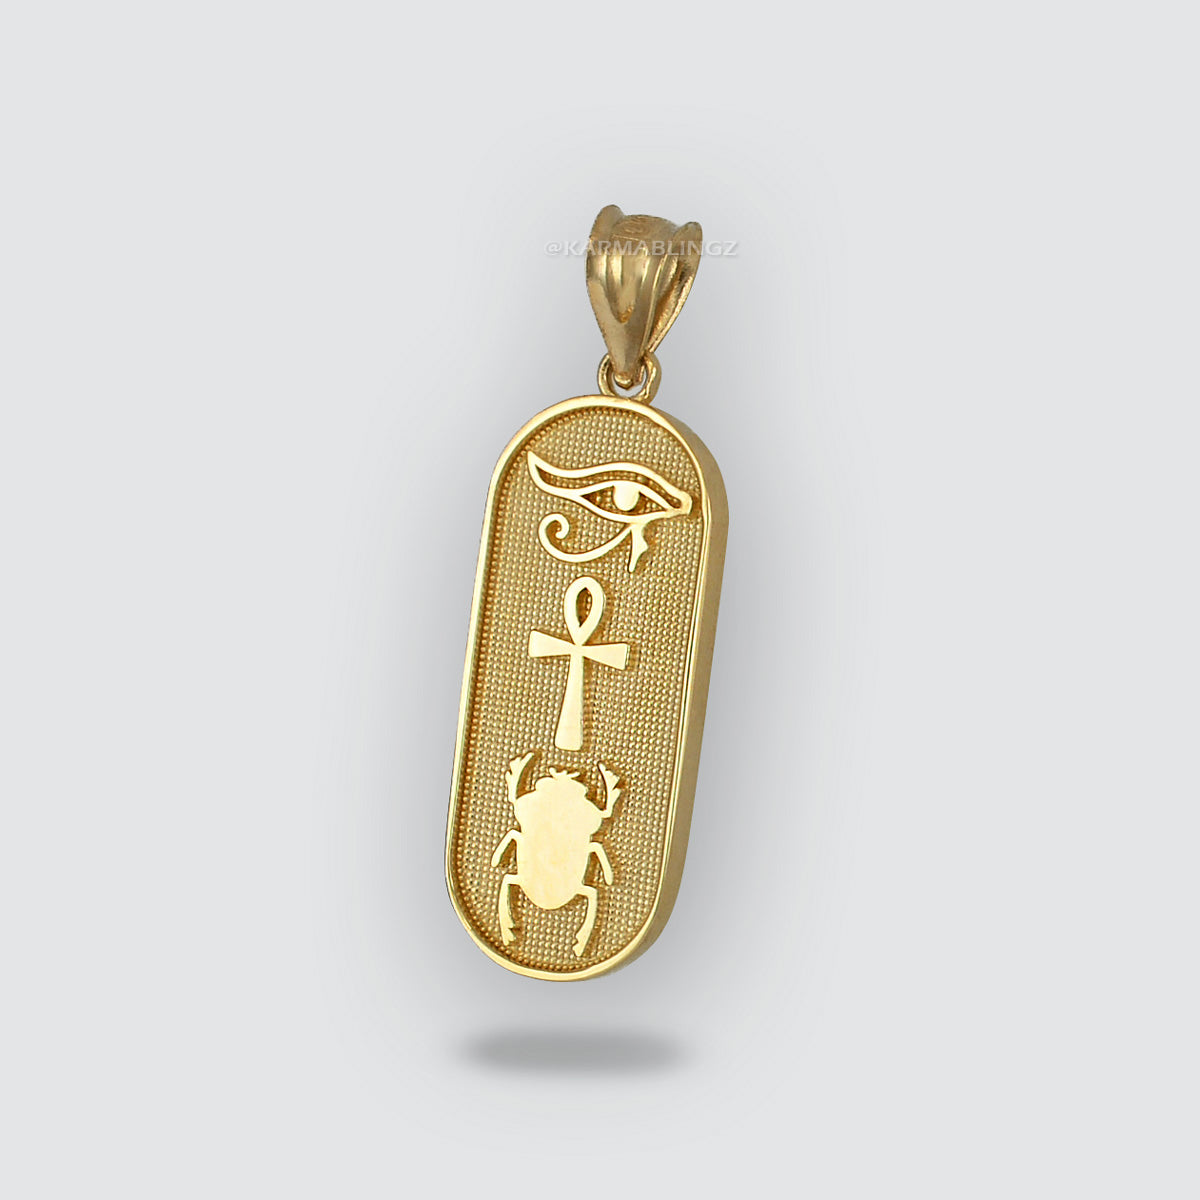 Gold Egyptian Symbols Eye of Horus, Ankh and Scarab Beetle Amulet Pendant Necklace Karma Blingz